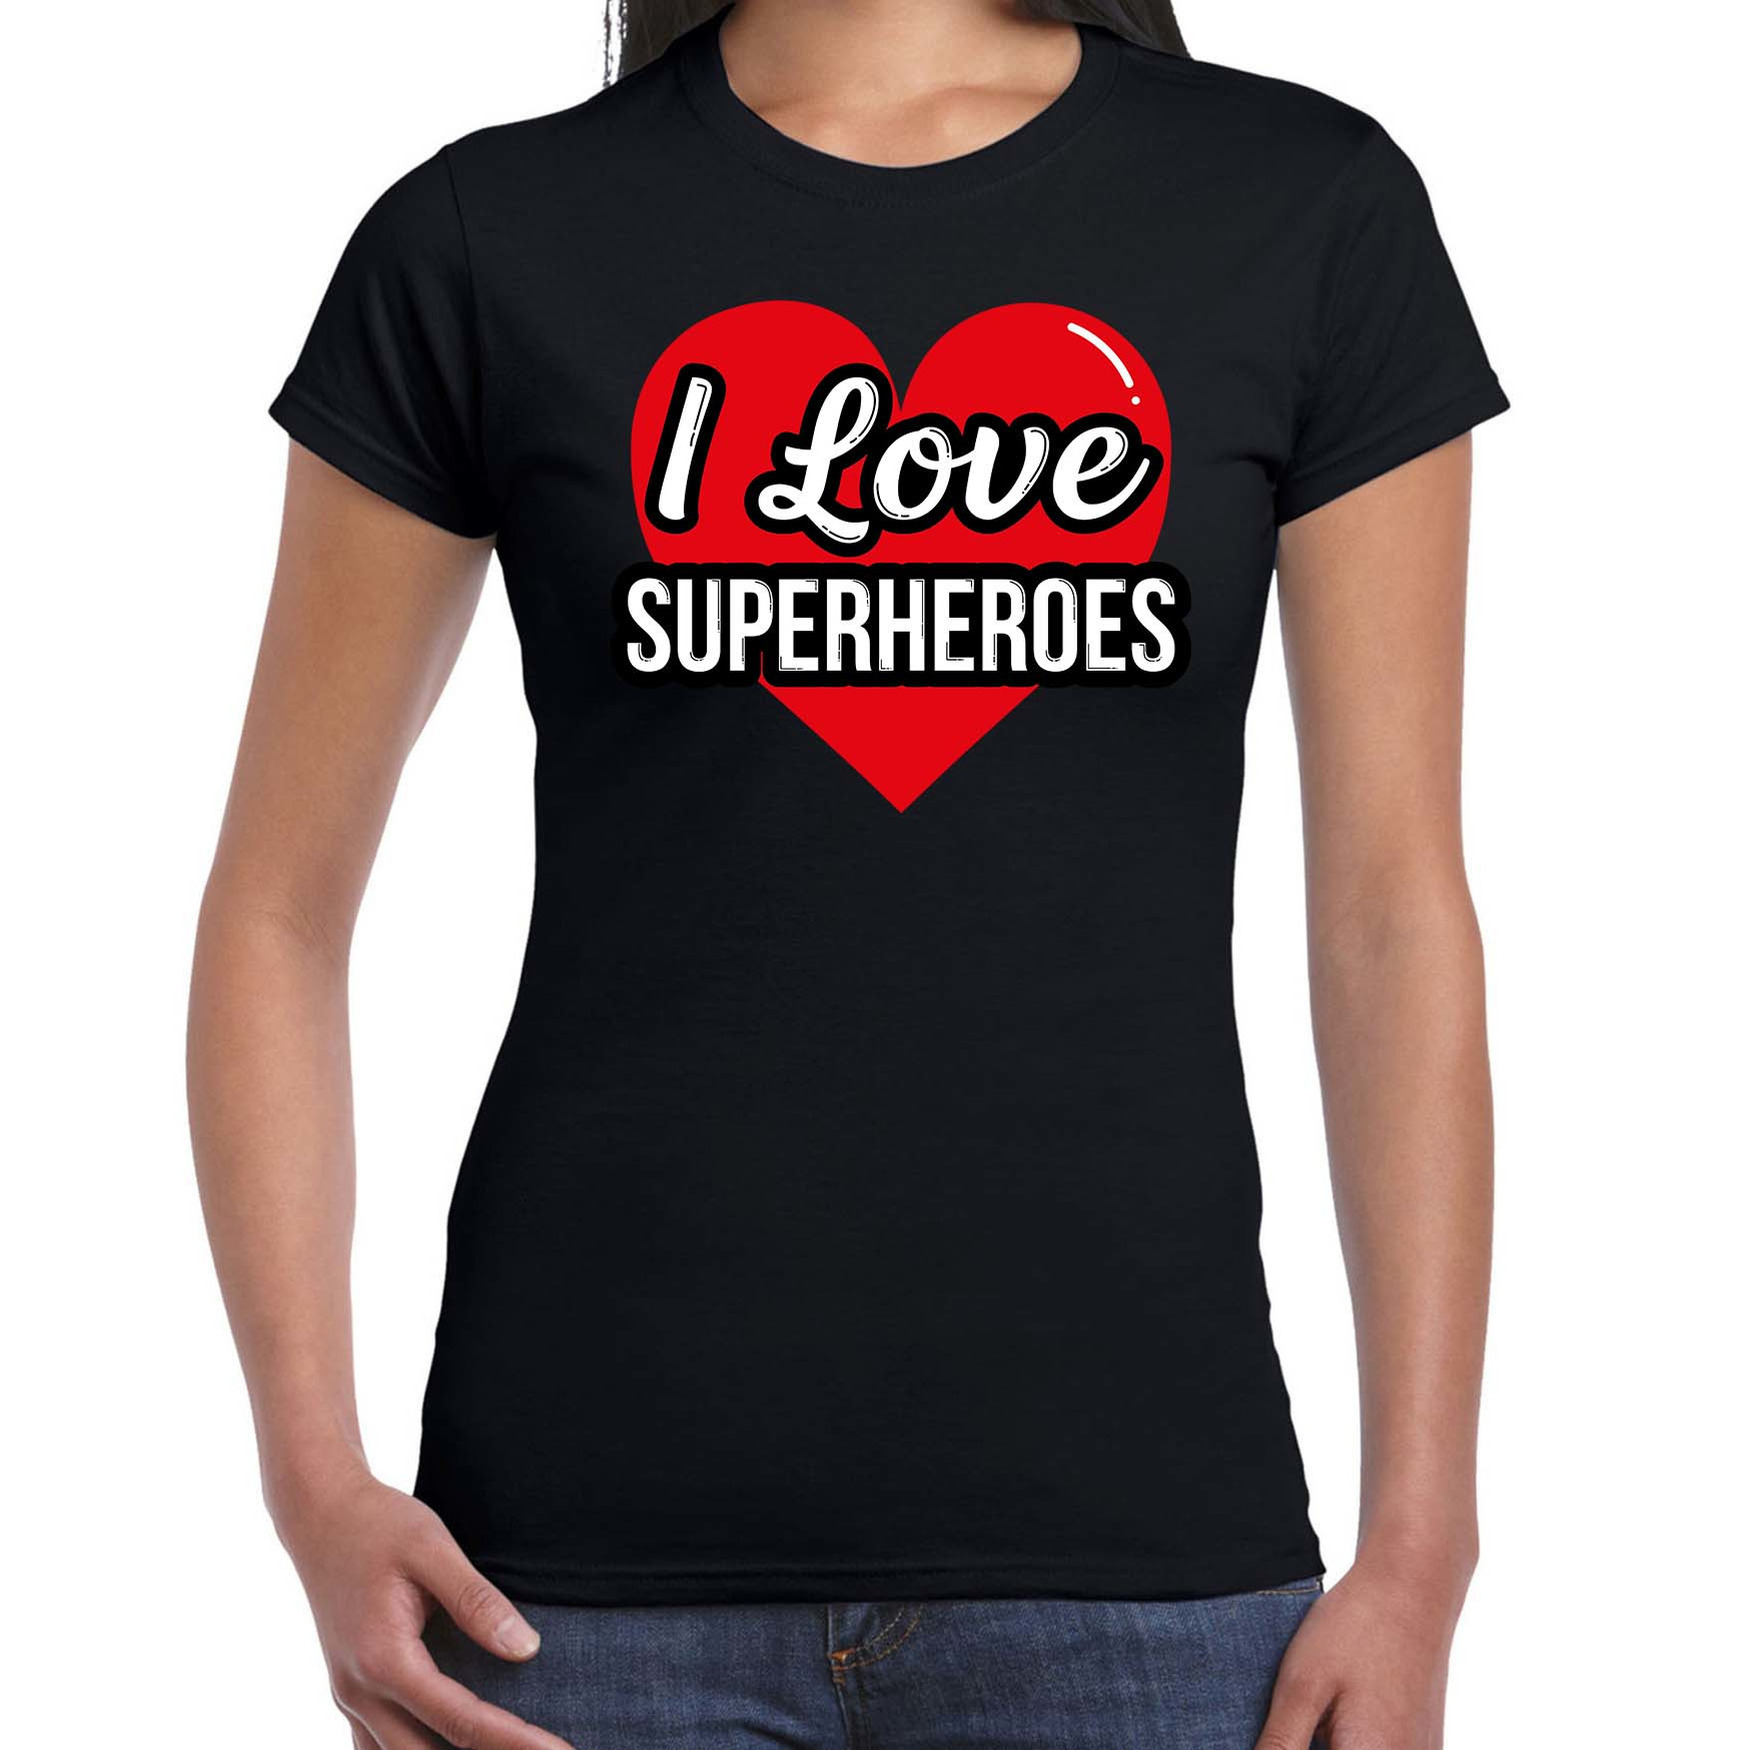 I love superheroes-superhelden verkleed t-shirt zwart voor dames Outfit verkleed feest